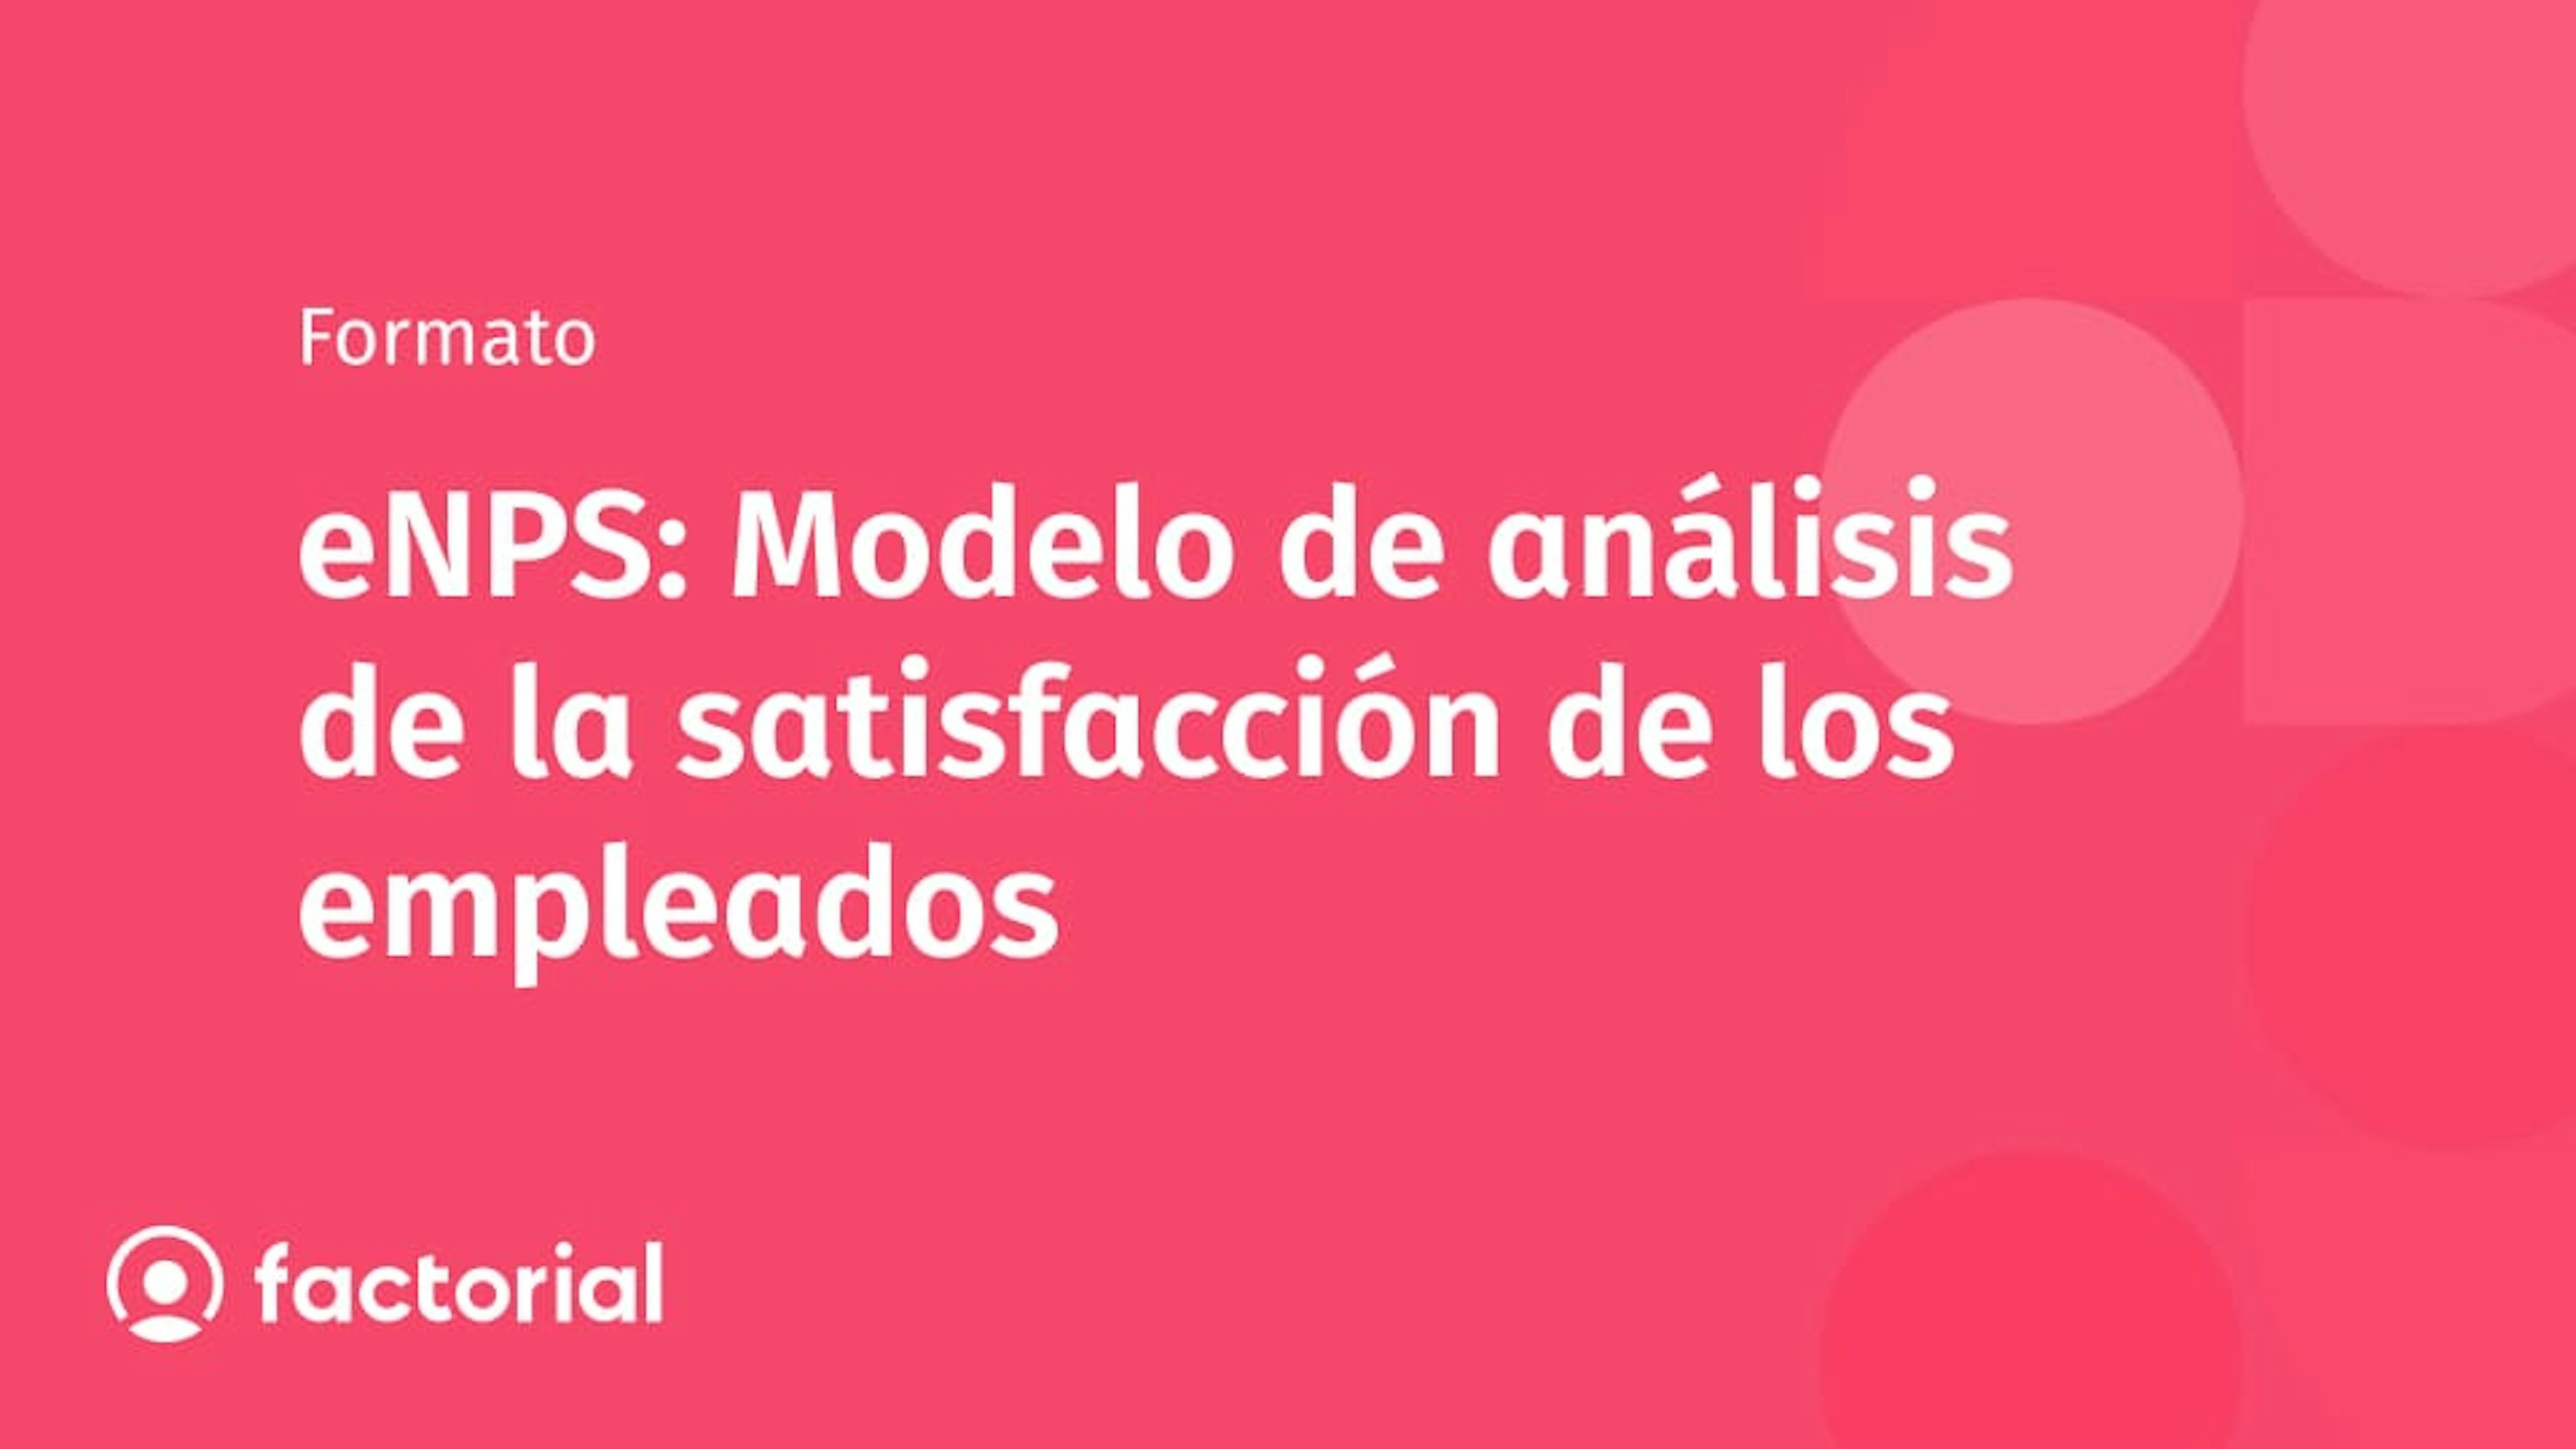 eNPS: Modelo de análisis de la satisfacción de los empleados